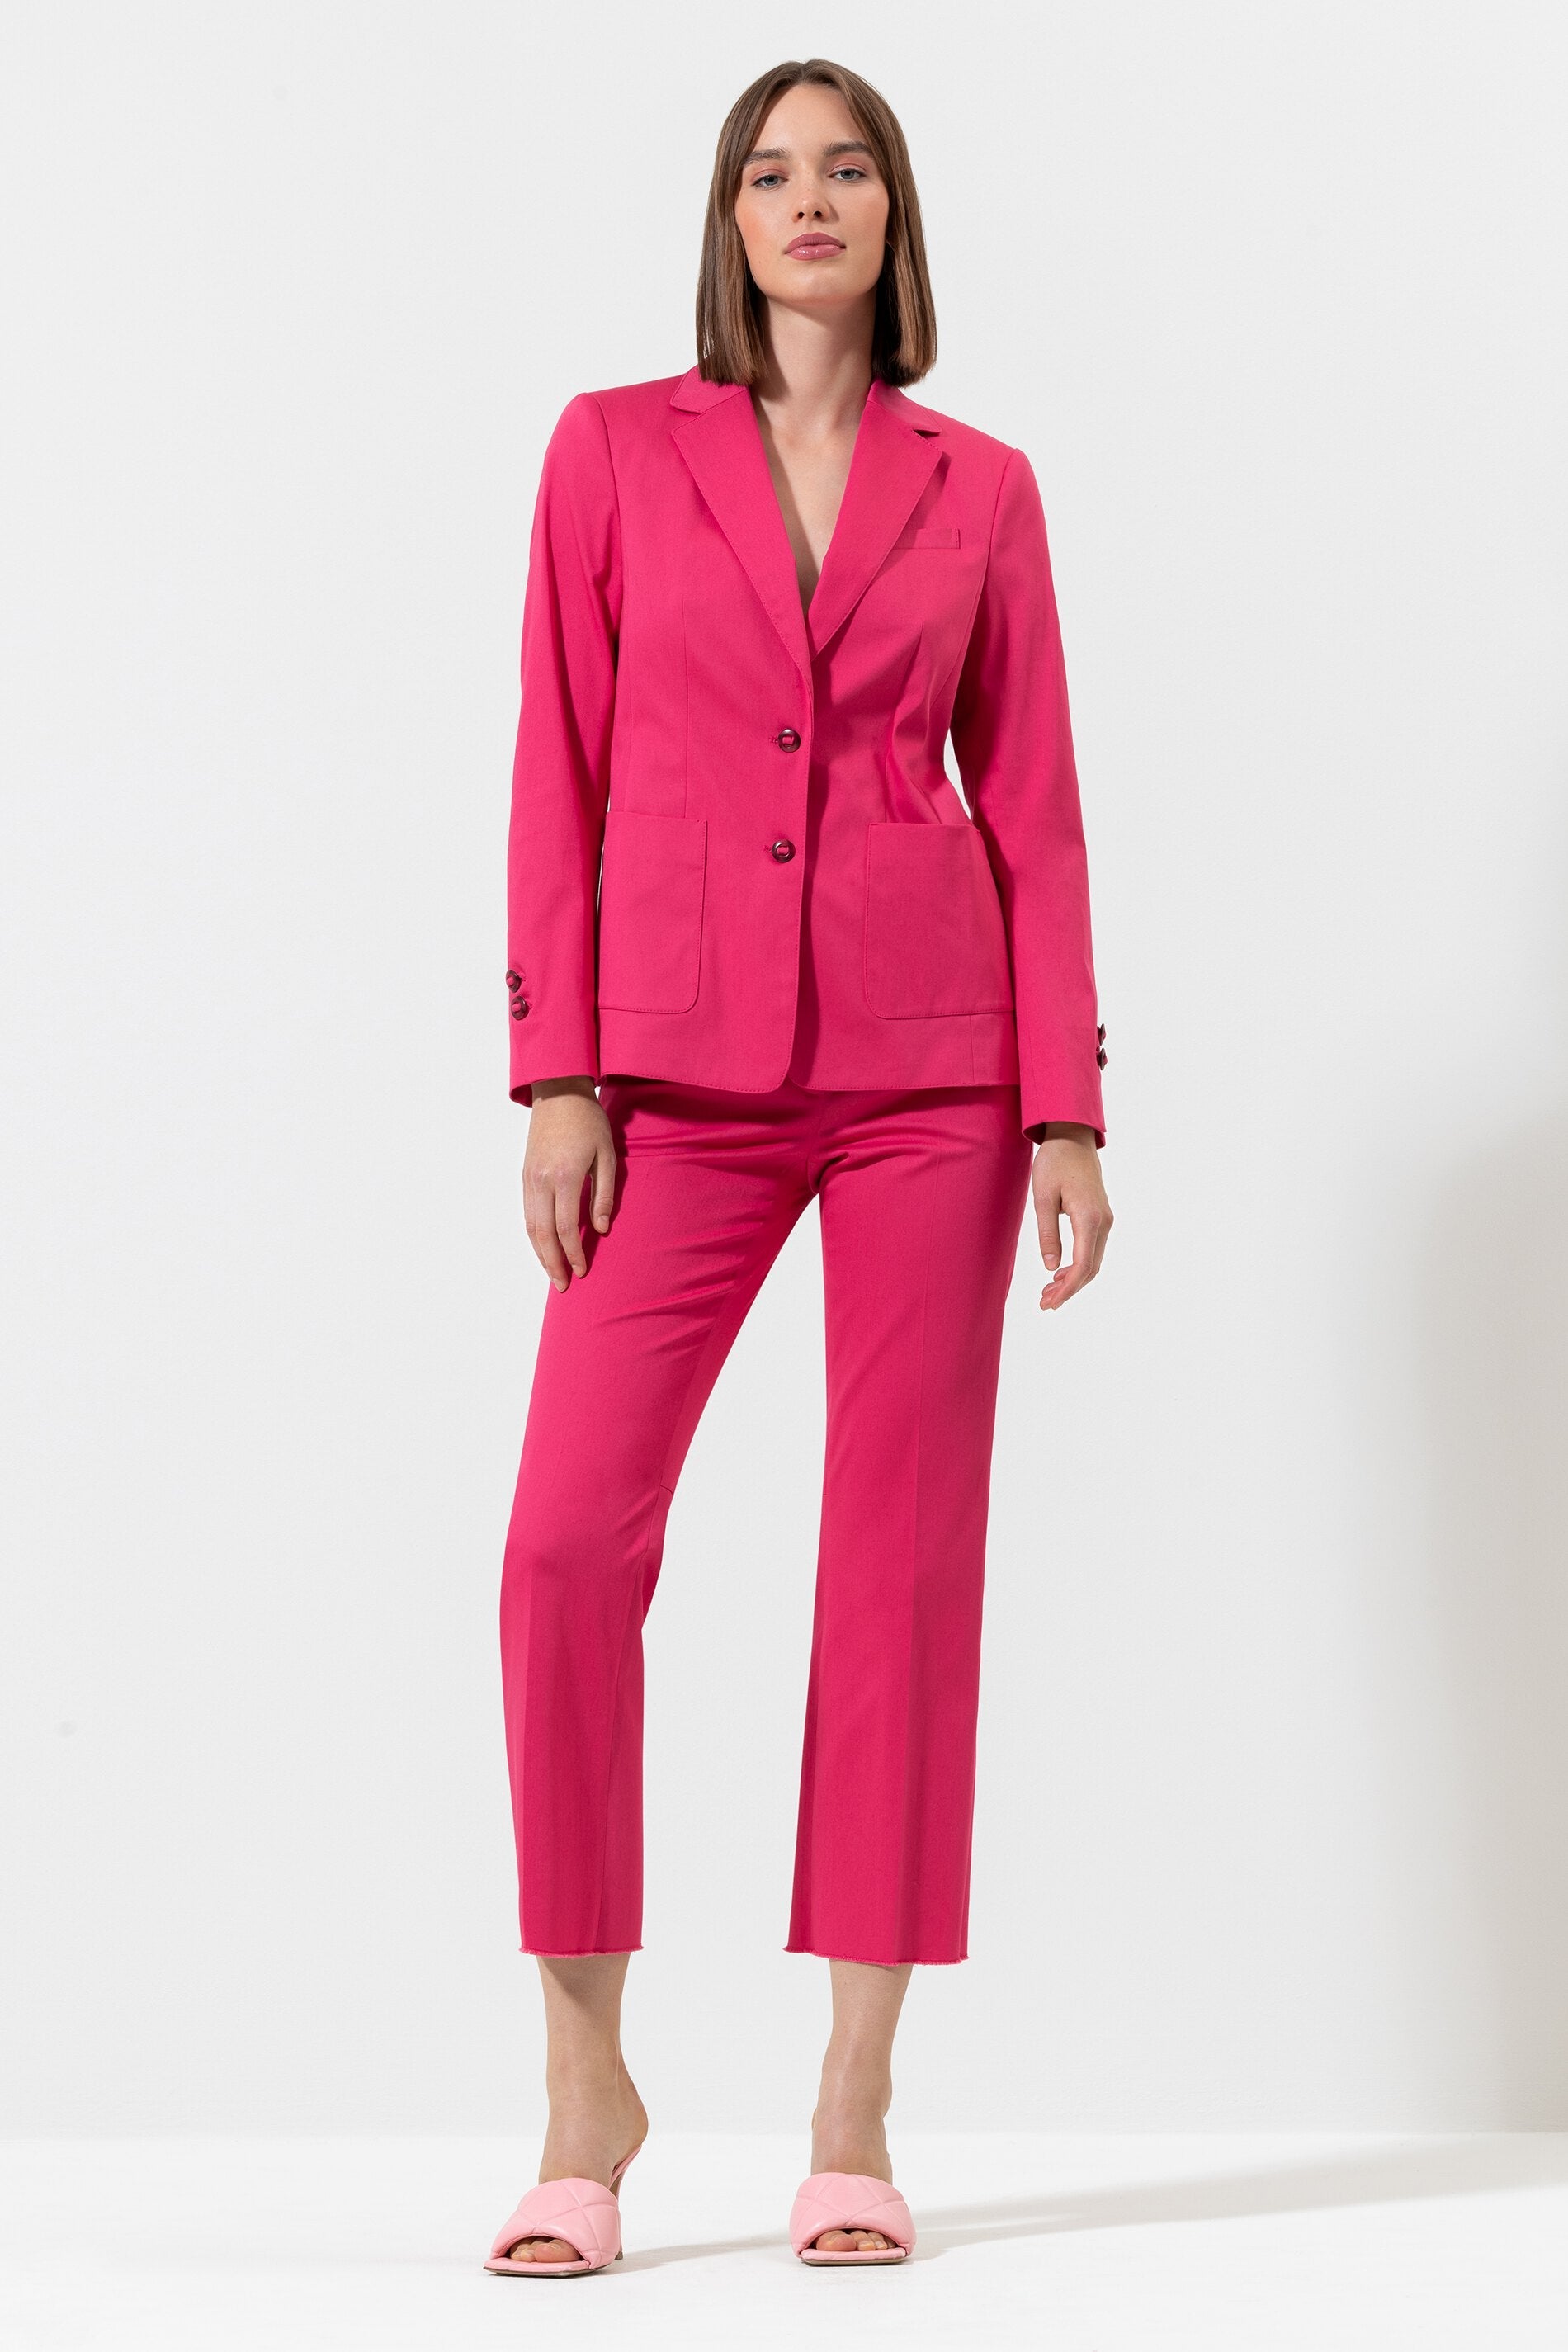 Габардиновый пиджак LUISA CERANO, цвет taffy pink пуловер с яркими полосками luisa cerano цвет taffy pink multi